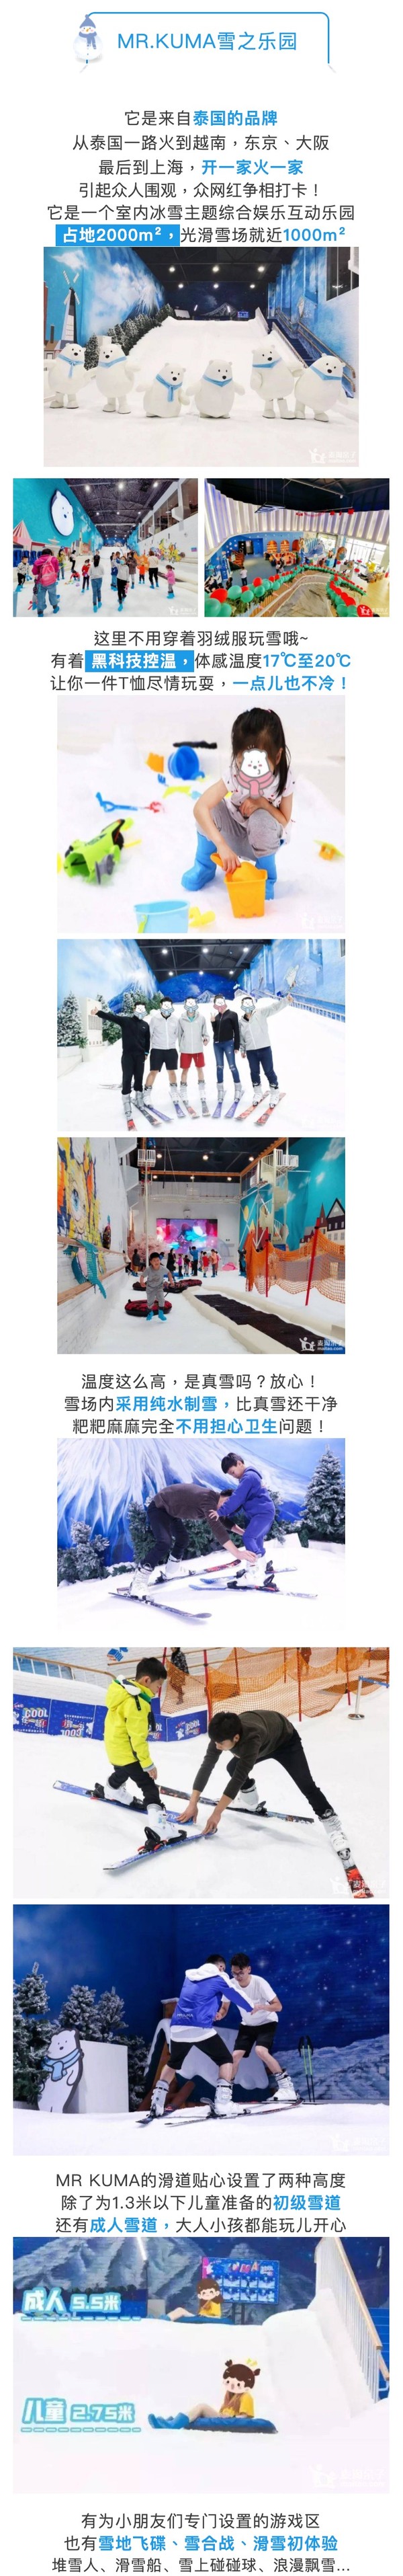 寒假可用免预约！上海 Mr.Kuma雪之乐园滑雪体验票